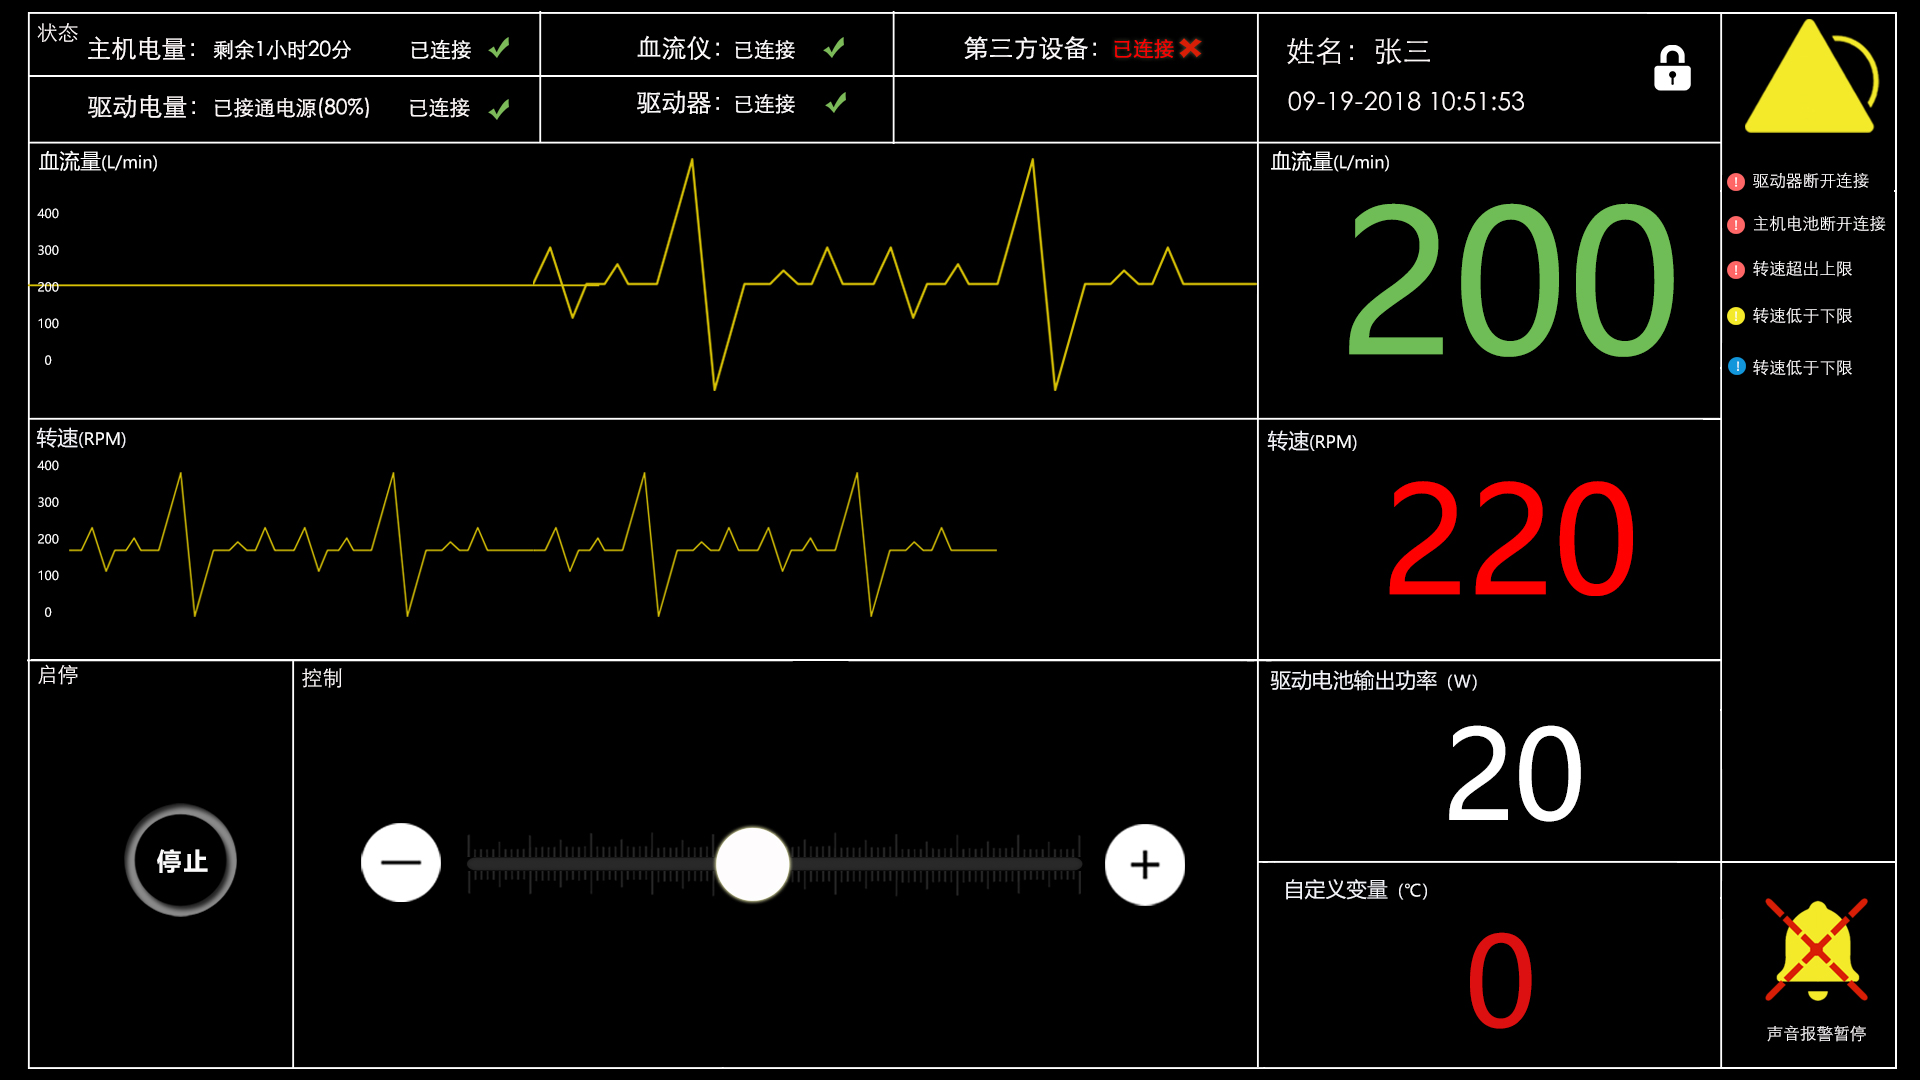 北京软件开发公司宜天信达与某高校合作开发人工心脏控制系统